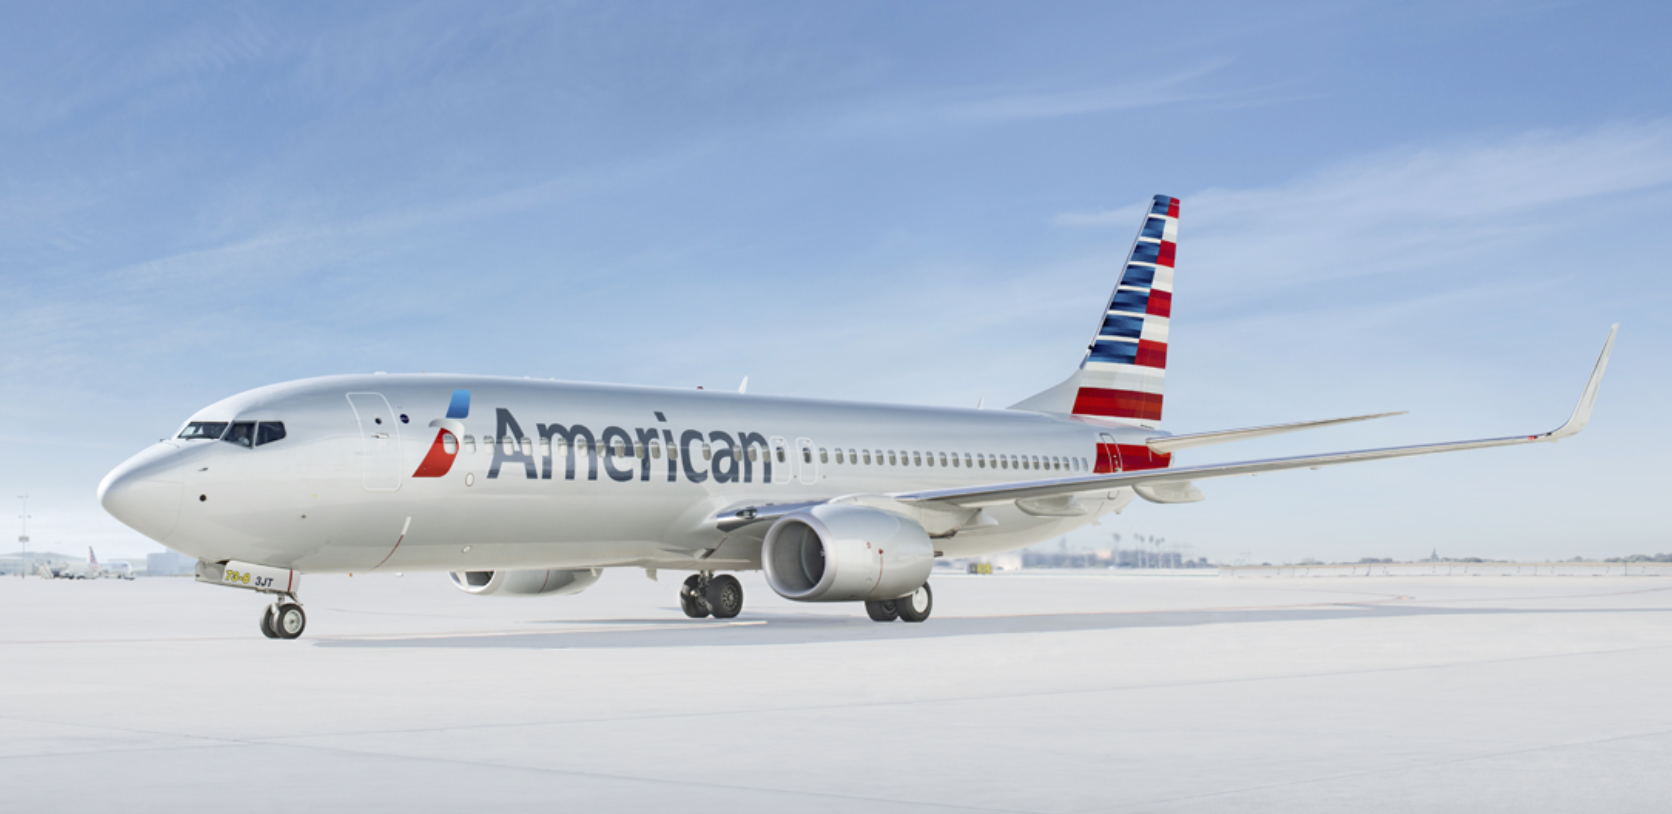 Î‘Ï€Î¿Ï„Î­Î»ÎµÏƒÎ¼Î± ÎµÎ¹ÎºÏŒÎ½Î±Ï‚ Î³Î¹Î± American Airlines Launches New Routes from New York to Montego Bay, San Jose, Liberia